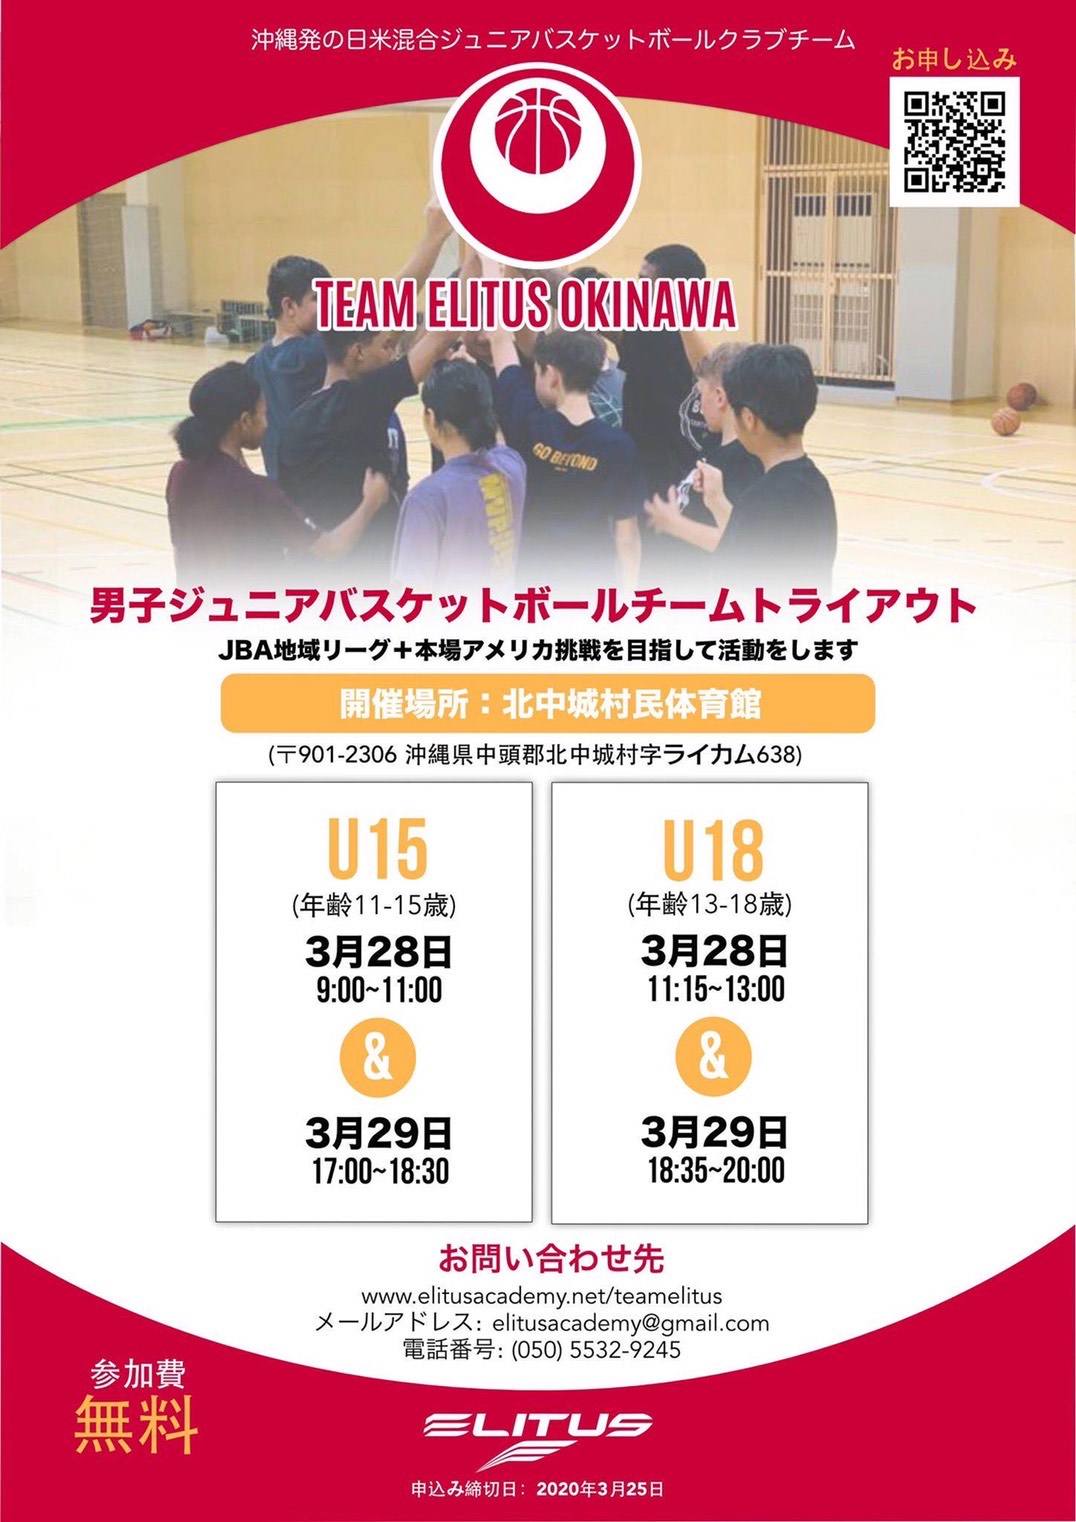 日米混合ジュニアバスケットボールクラブチーム「エリータス」発足!